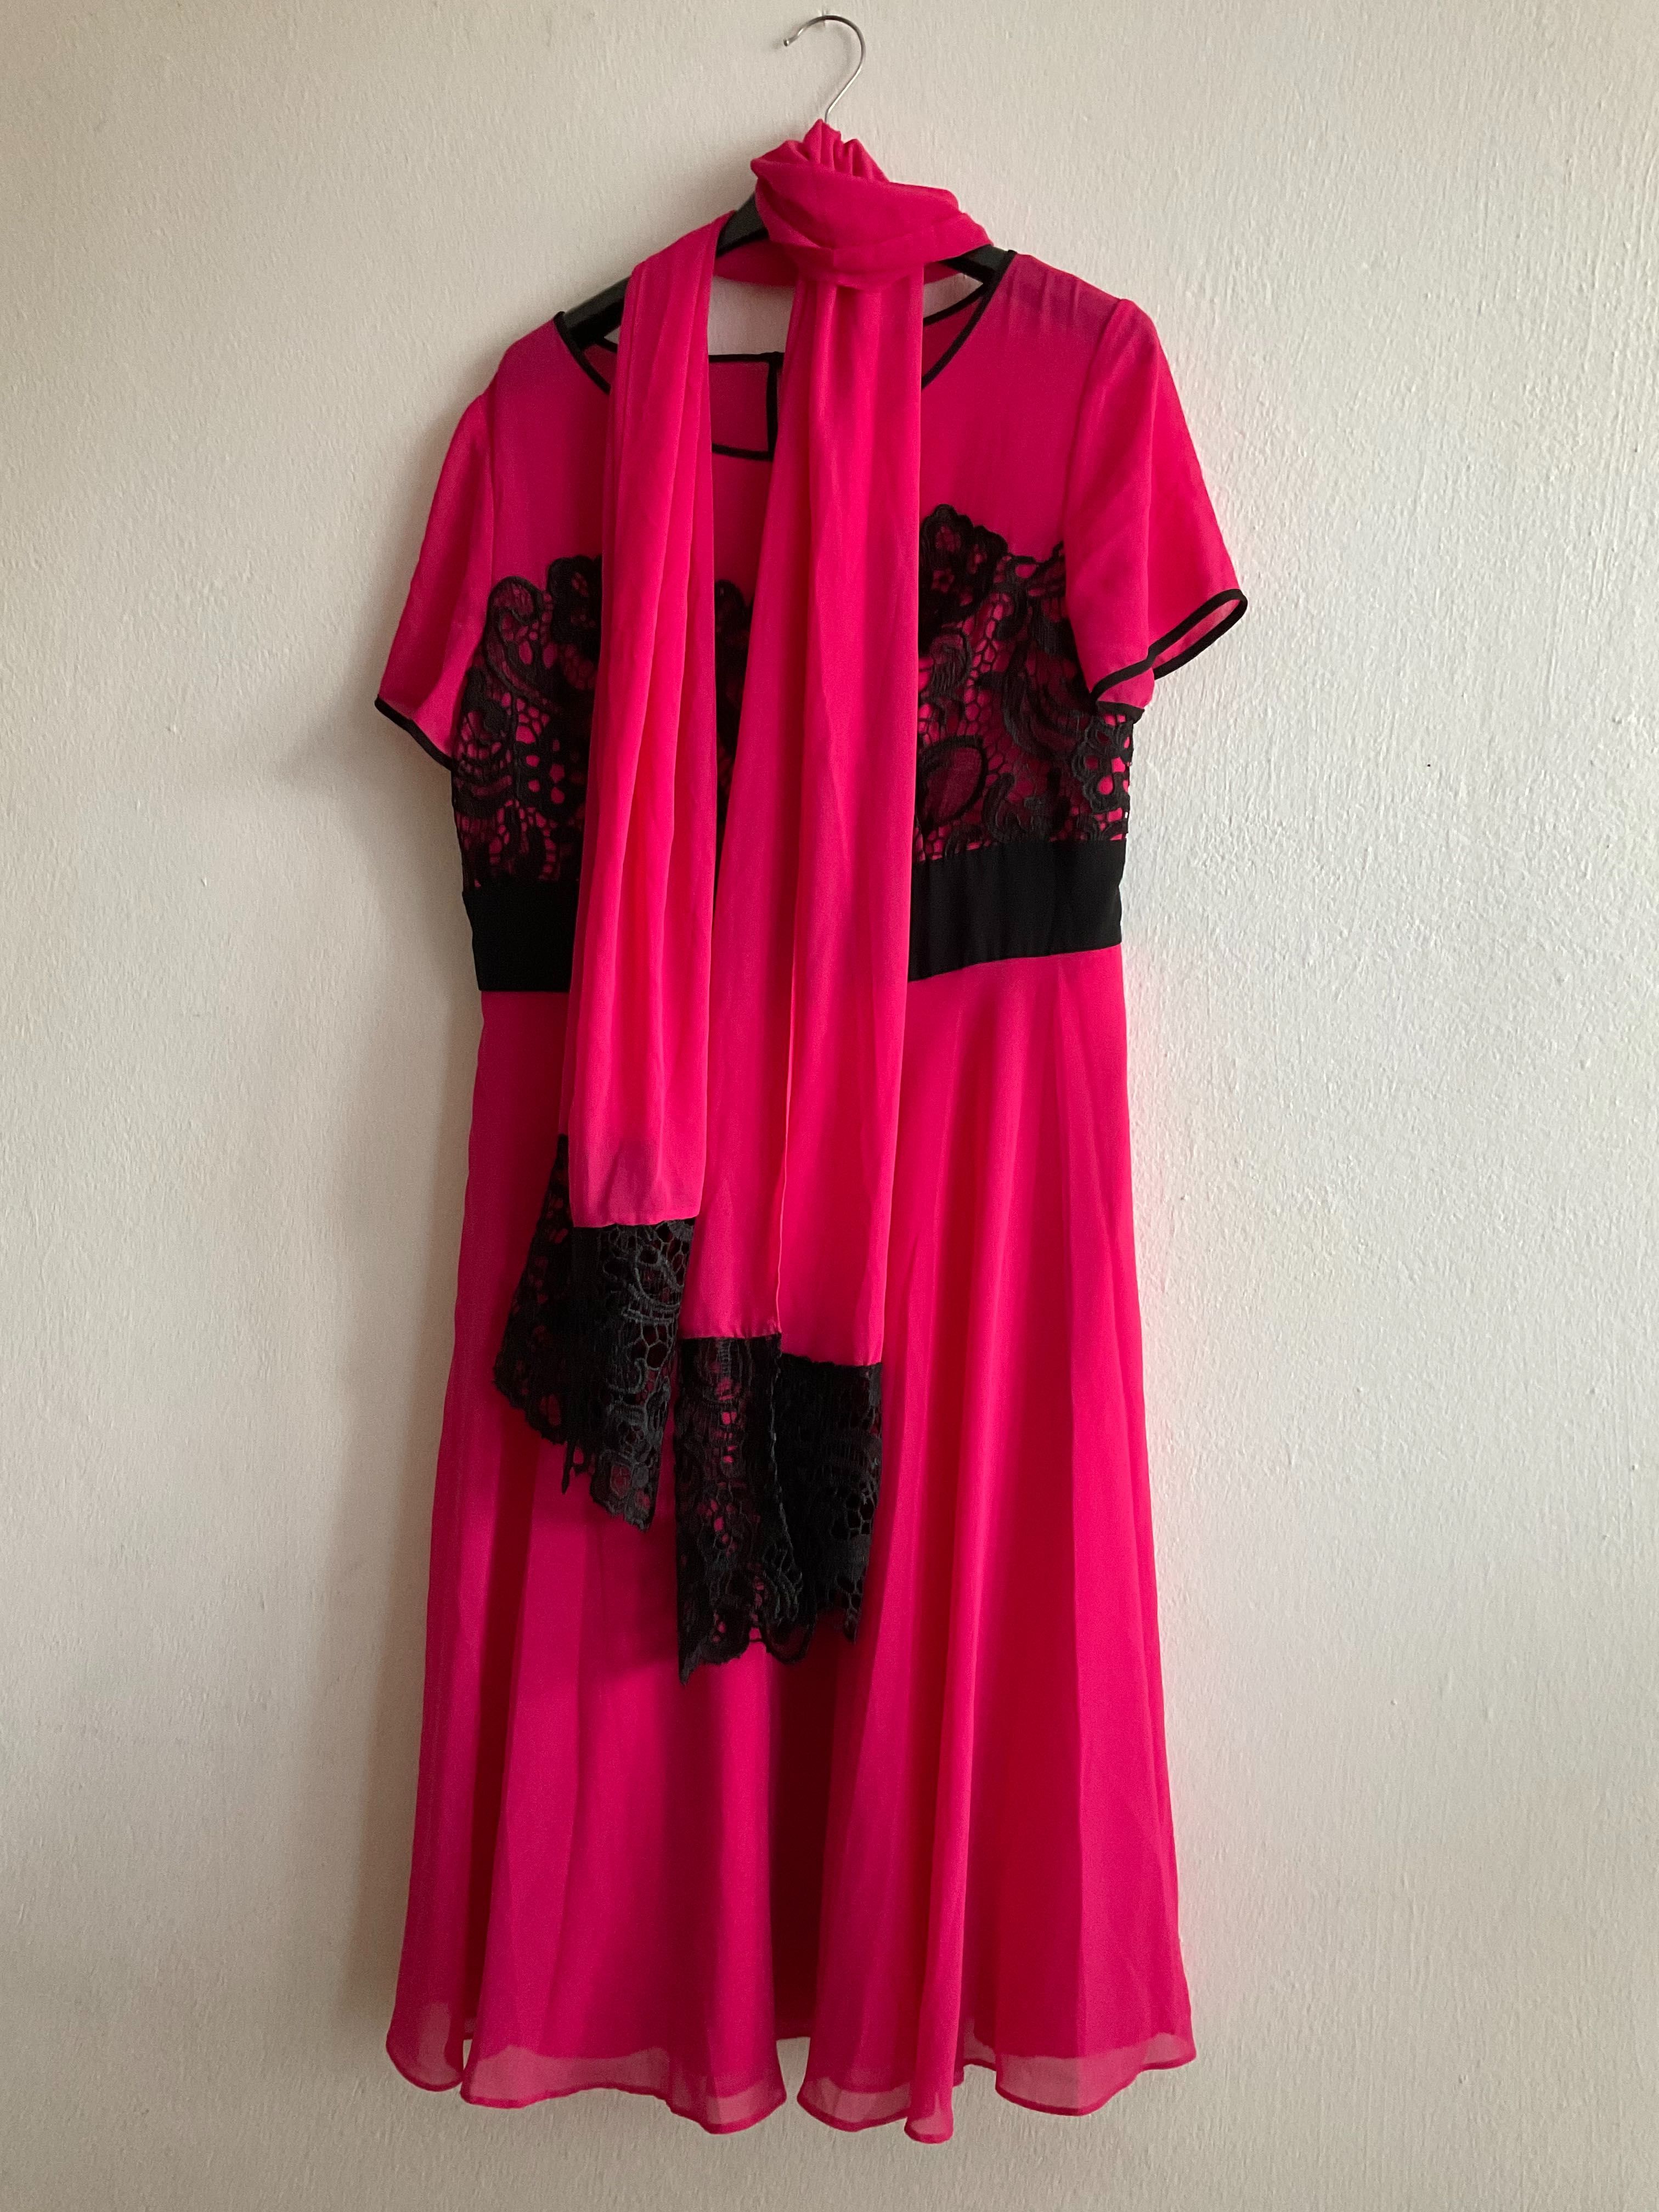 Śliczna różowa sukienka z czarną koronką i szalem rozmiar 42